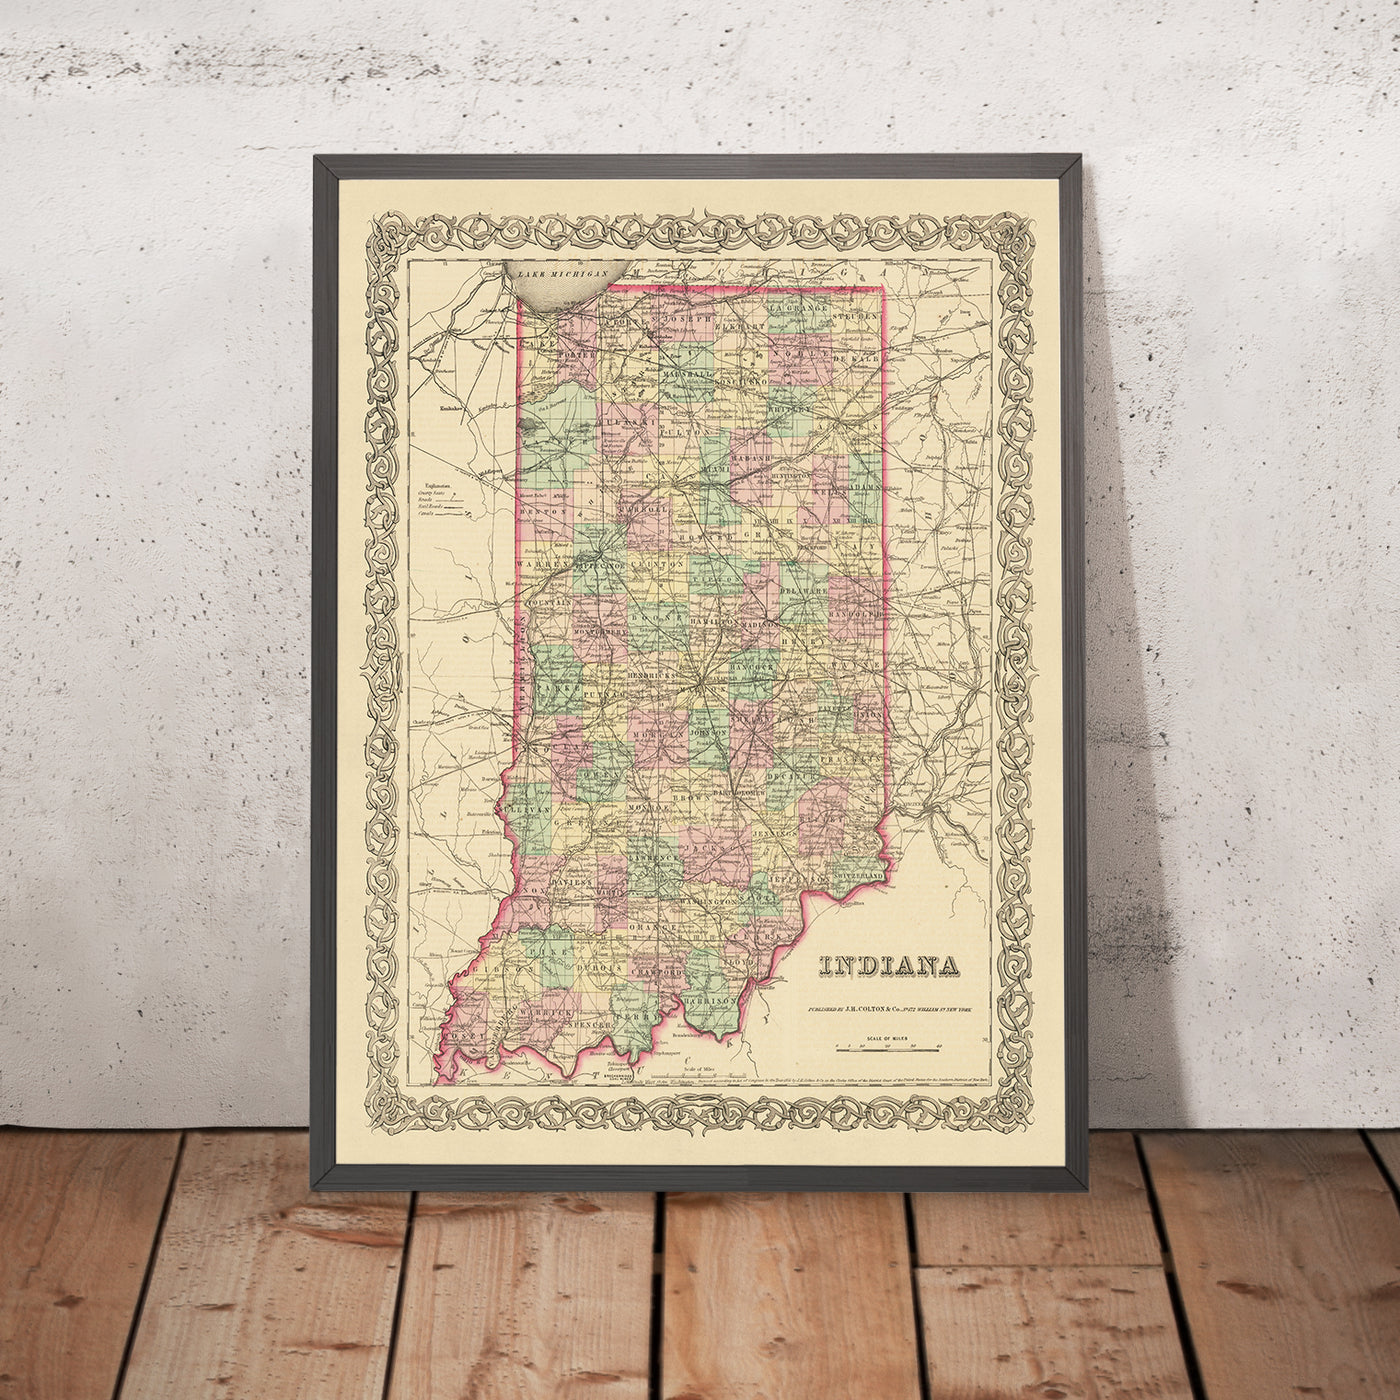 Ancienne carte de l'Indiana par JH Colton, 1855 : Indianapolis, Fort Wayne, New Albany, Terre Haute, Lafayette